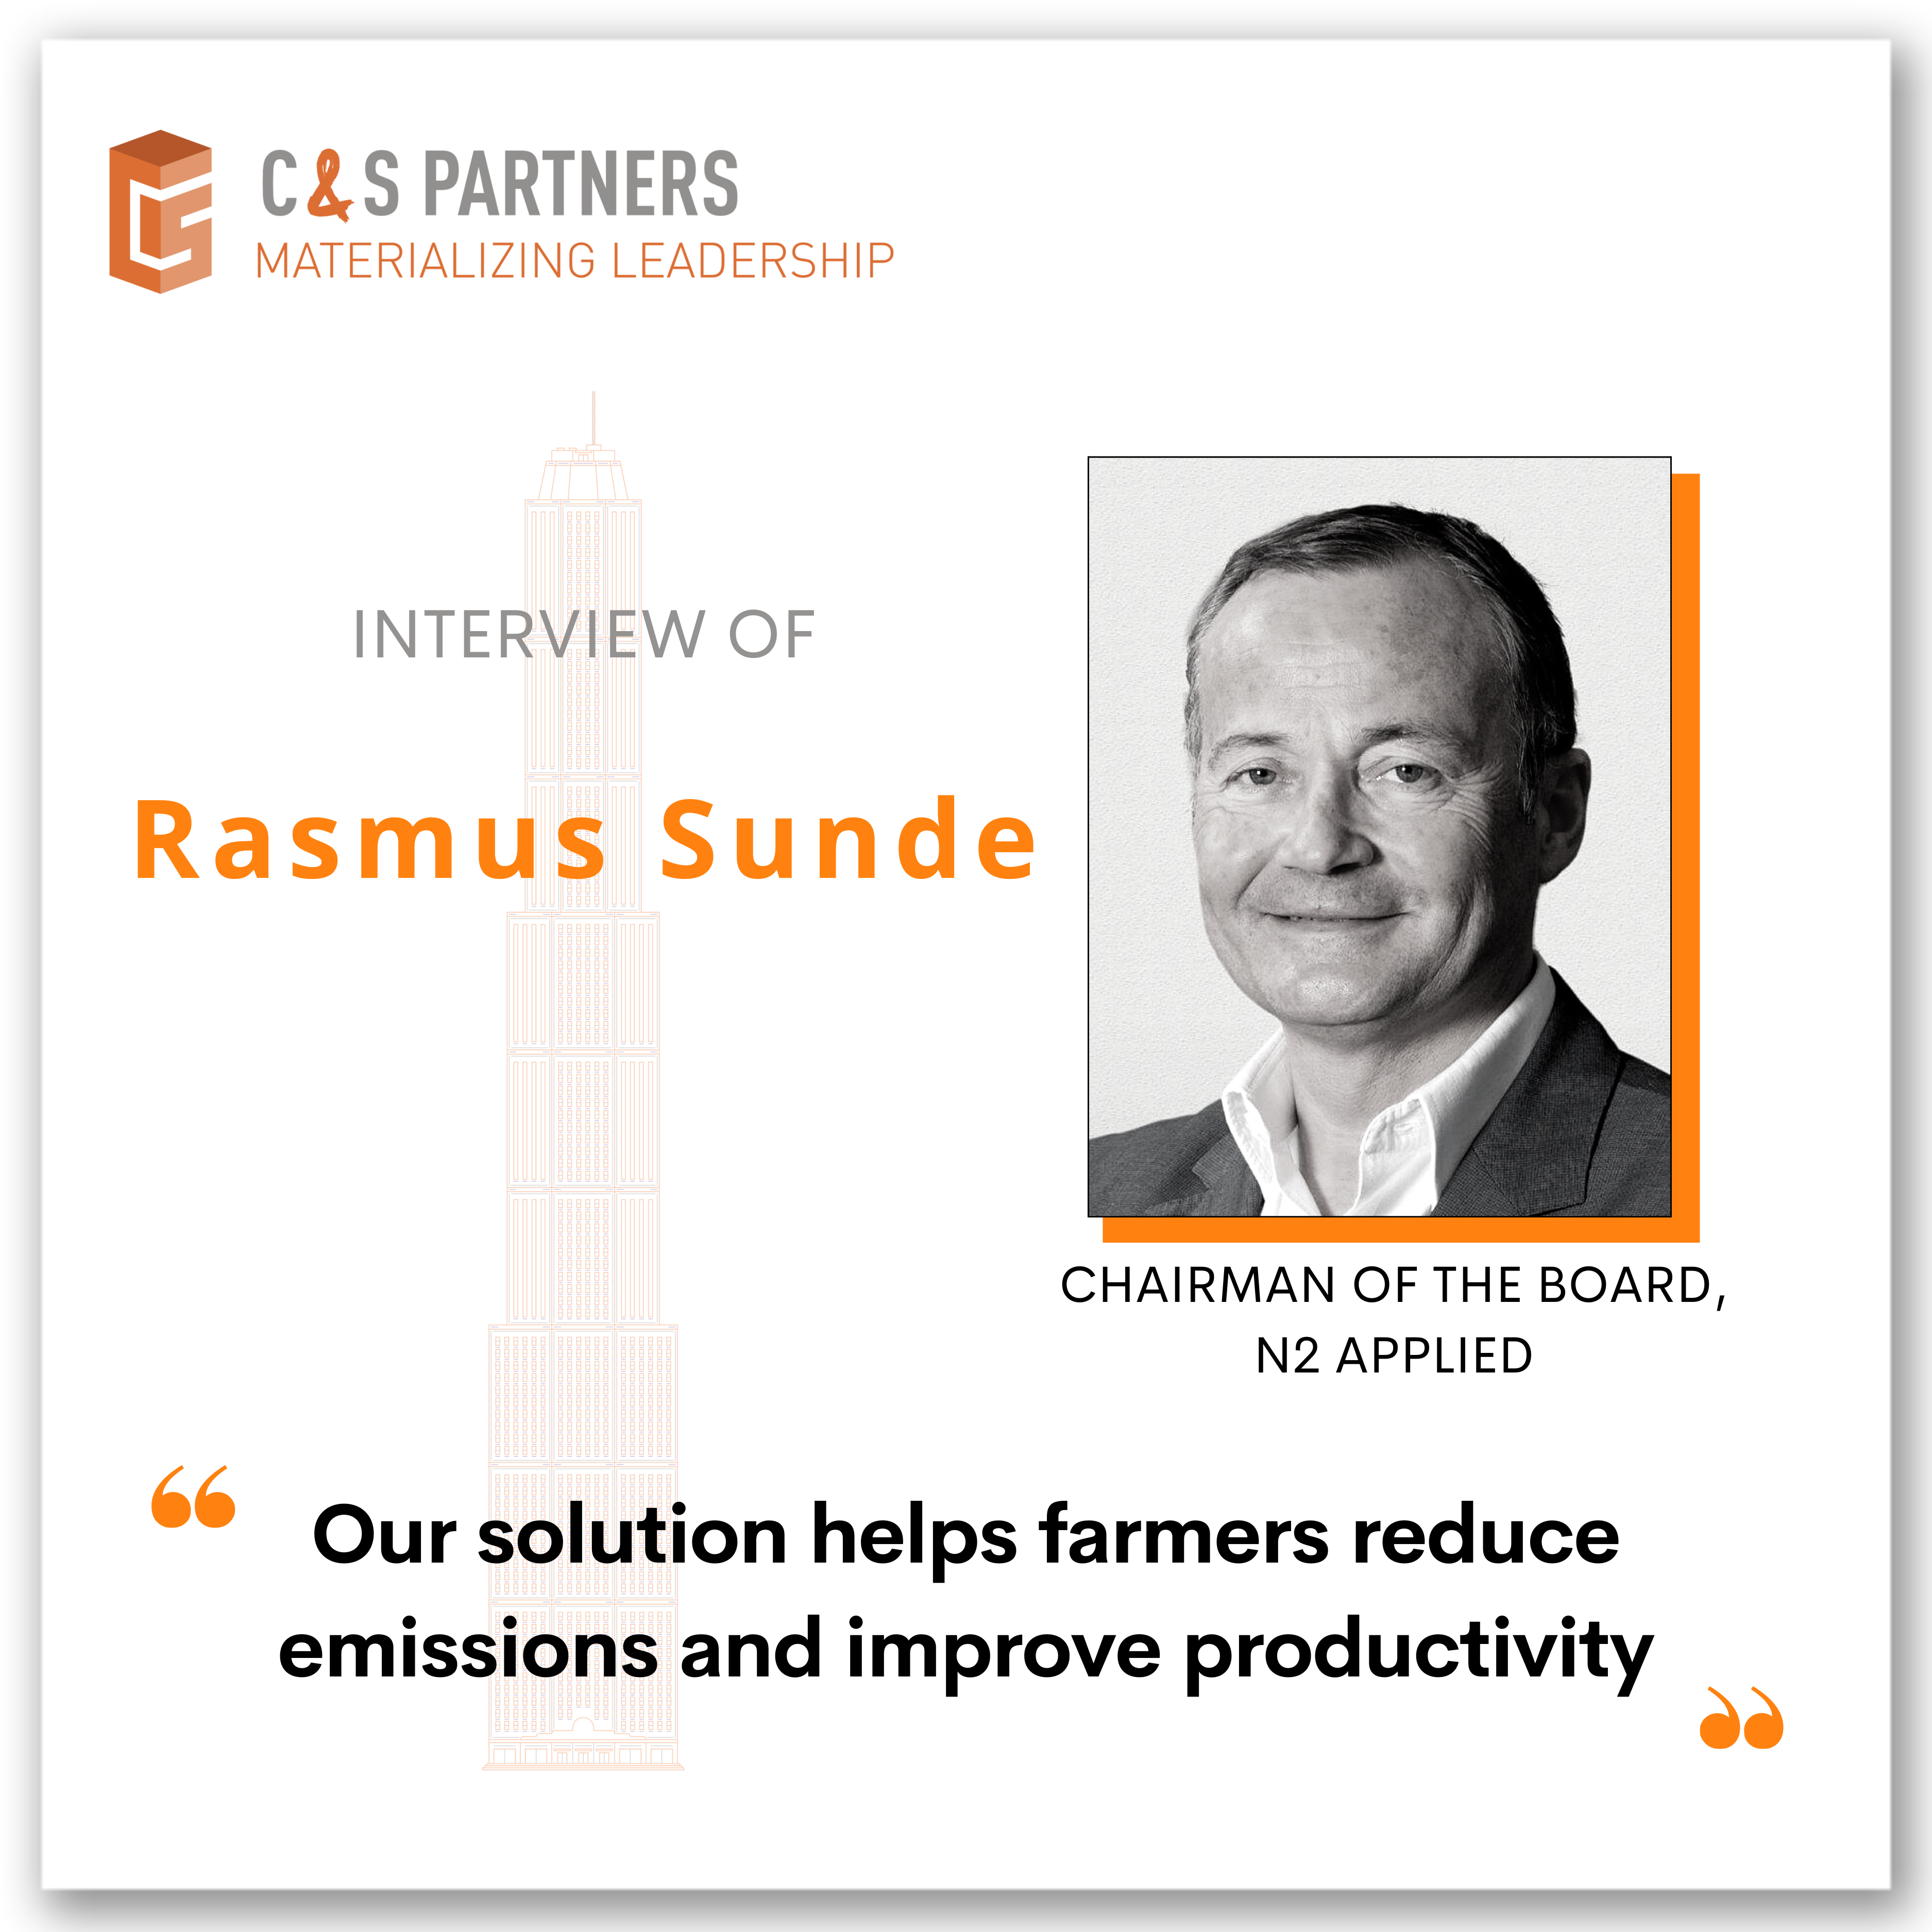 C&S Partners - Rasmus Sunde - N2 Applied